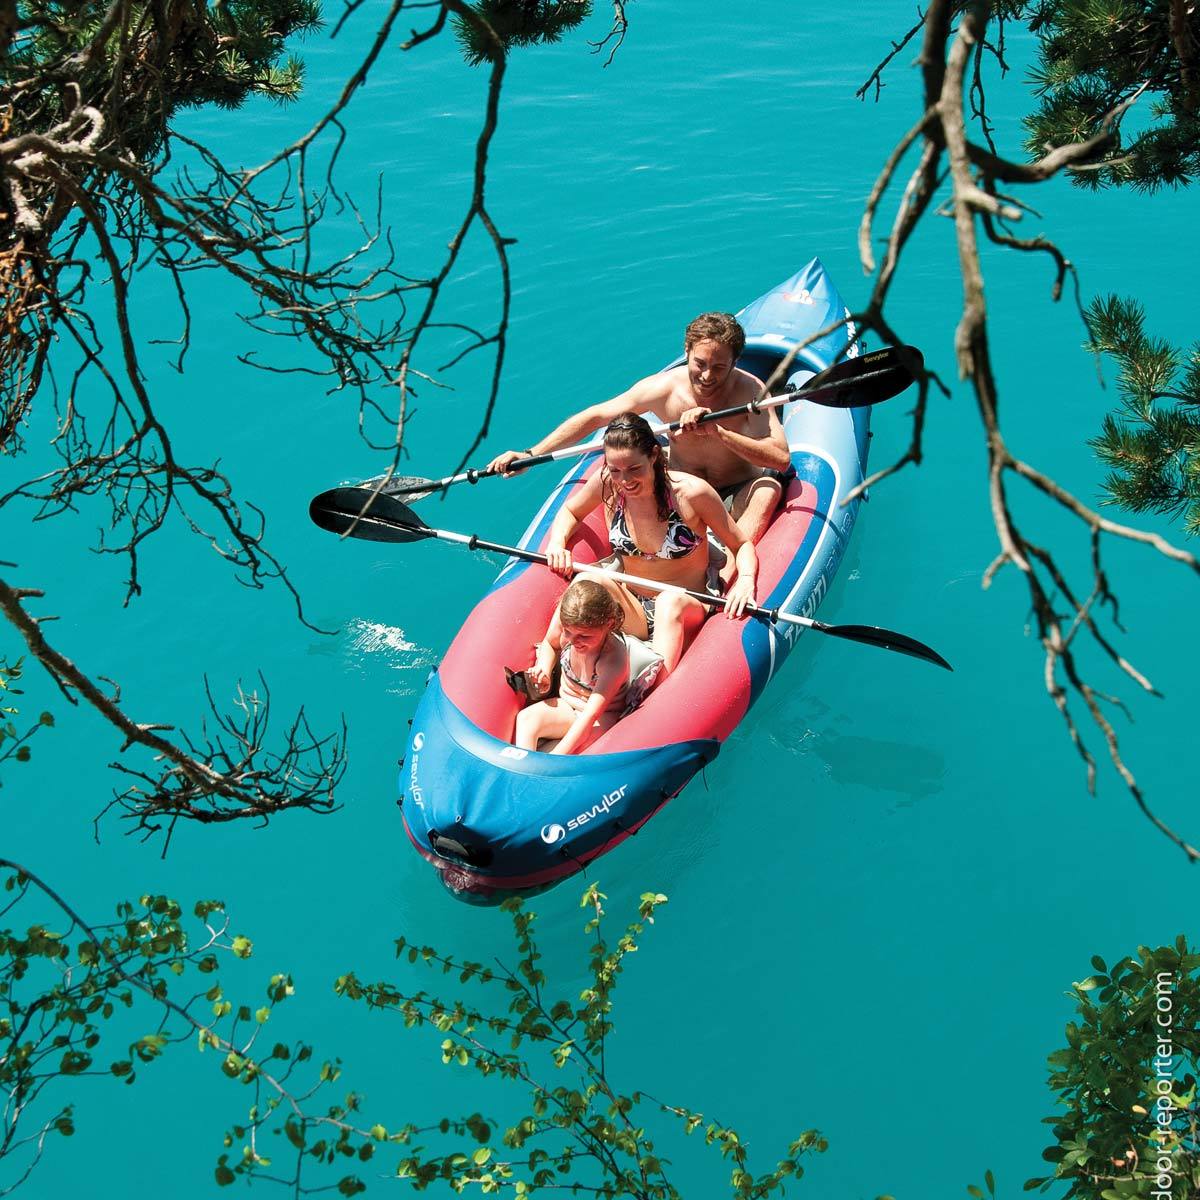 Sevylor Tahiti Plus 9ft  (361cm) 3 Person Inflatable Kayak